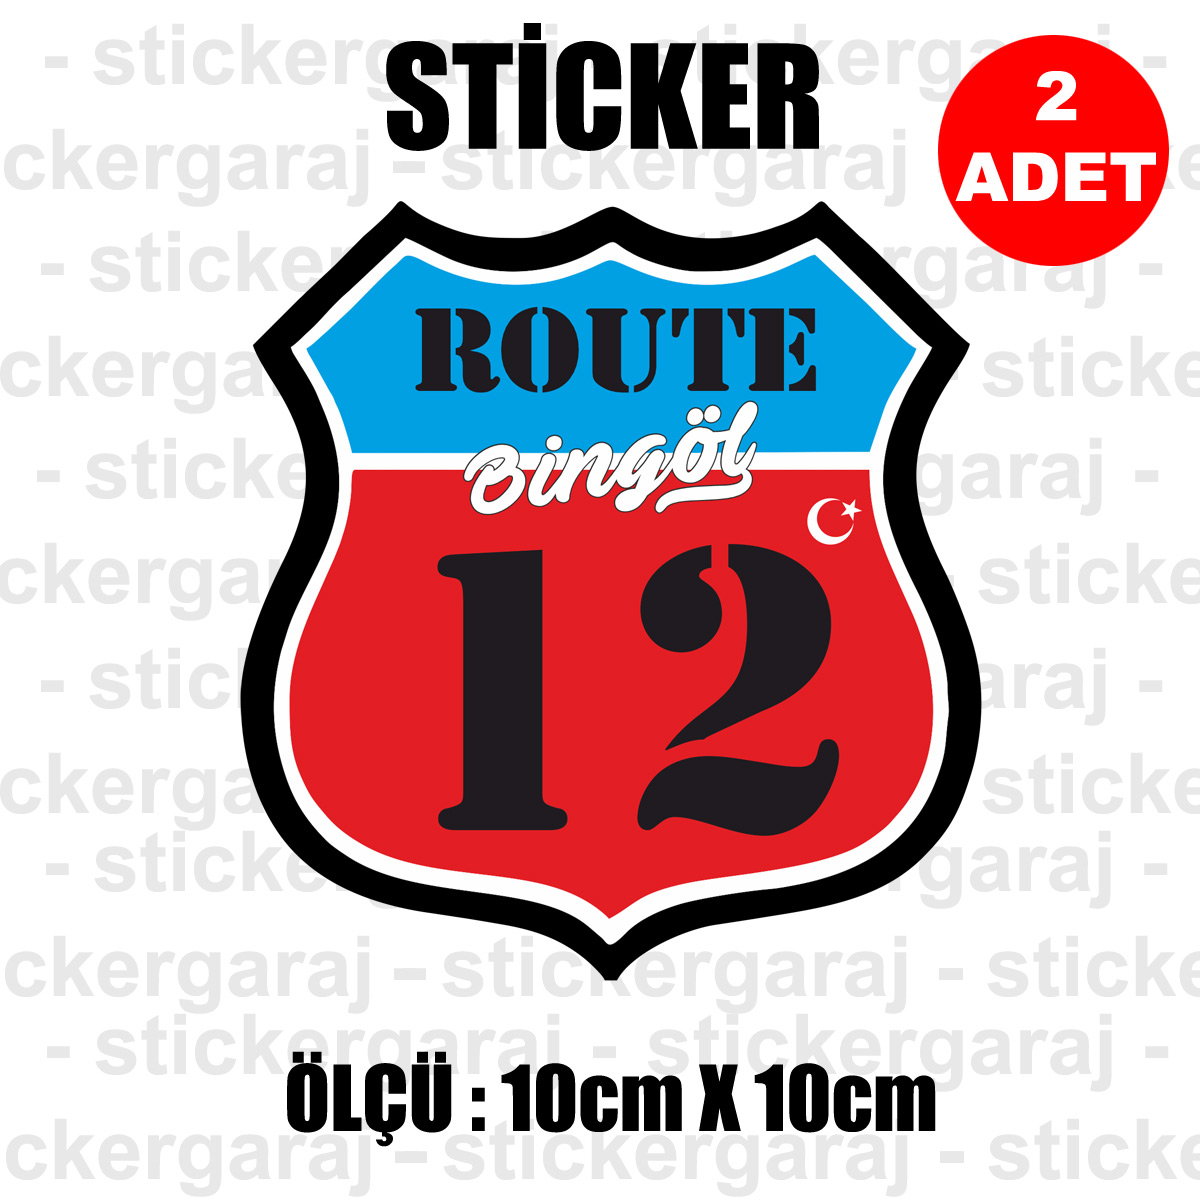 12 BINGOL - 12 Bingöl Rota İl Kodu Sticker